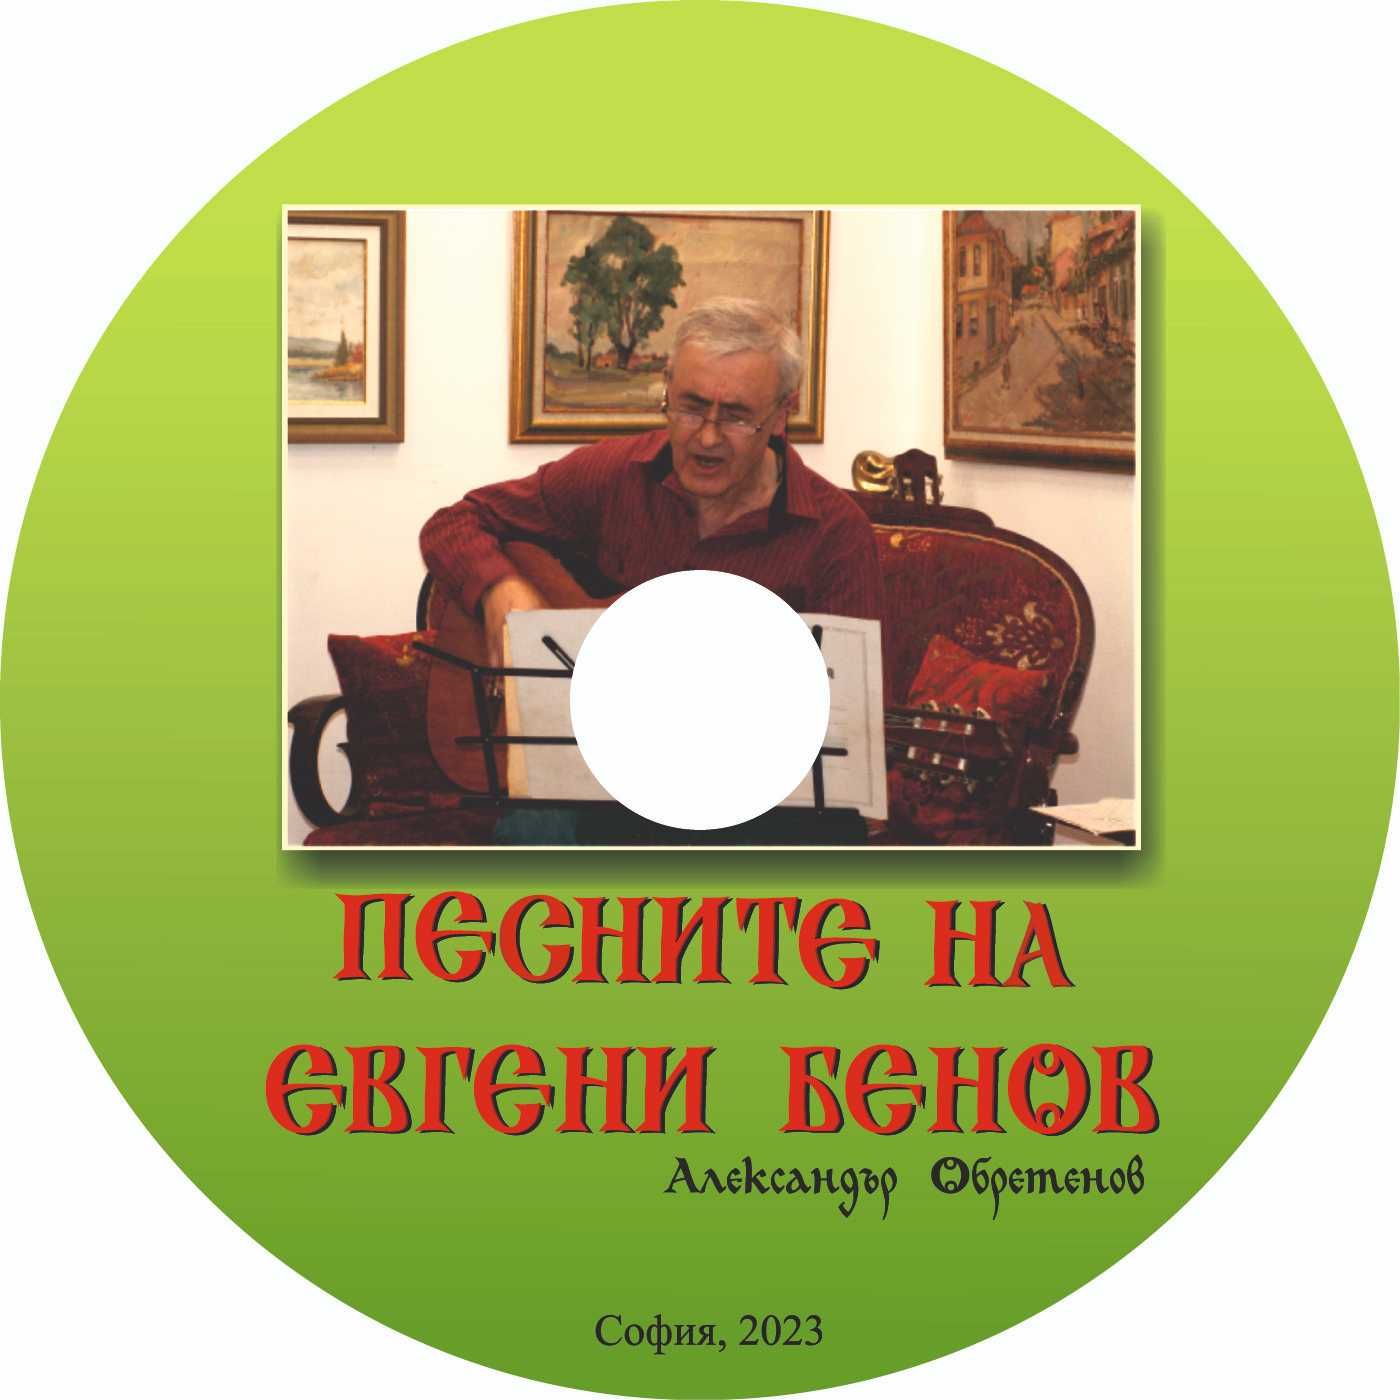 "Песните на Евгени Бенов" - електронна книга на диск